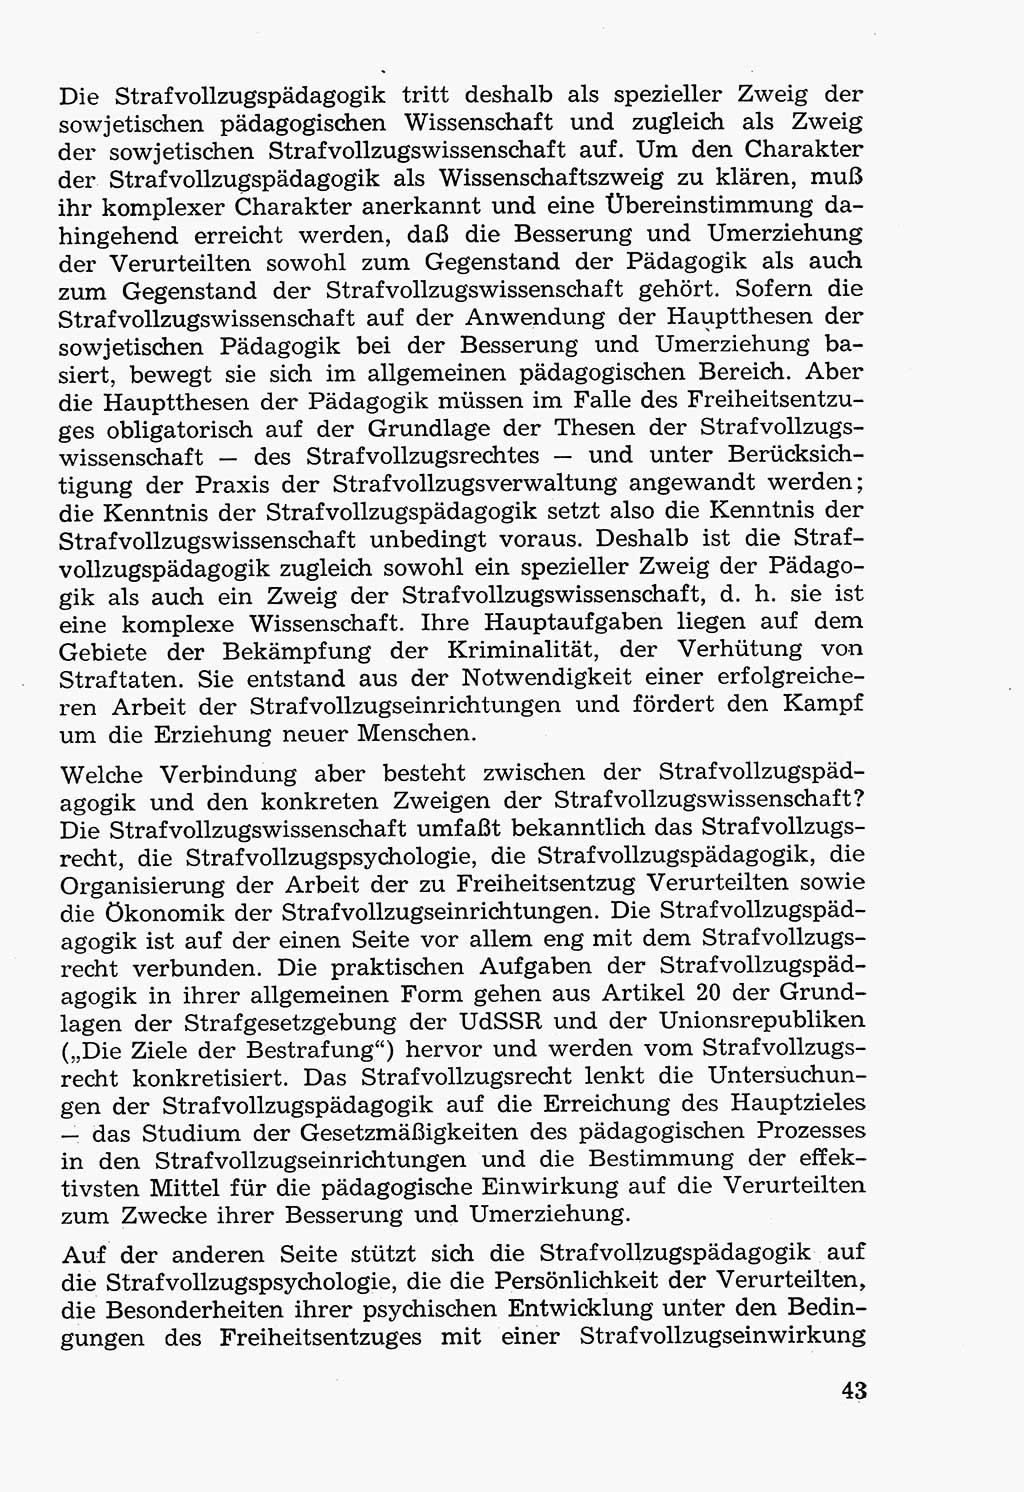 Lehrbuch der Strafvollzugspädagogik [Deutsche Demokratische Republik (DDR)] 1969, Seite 43 (Lb. SV-Pd. DDR 1969, S. 43)